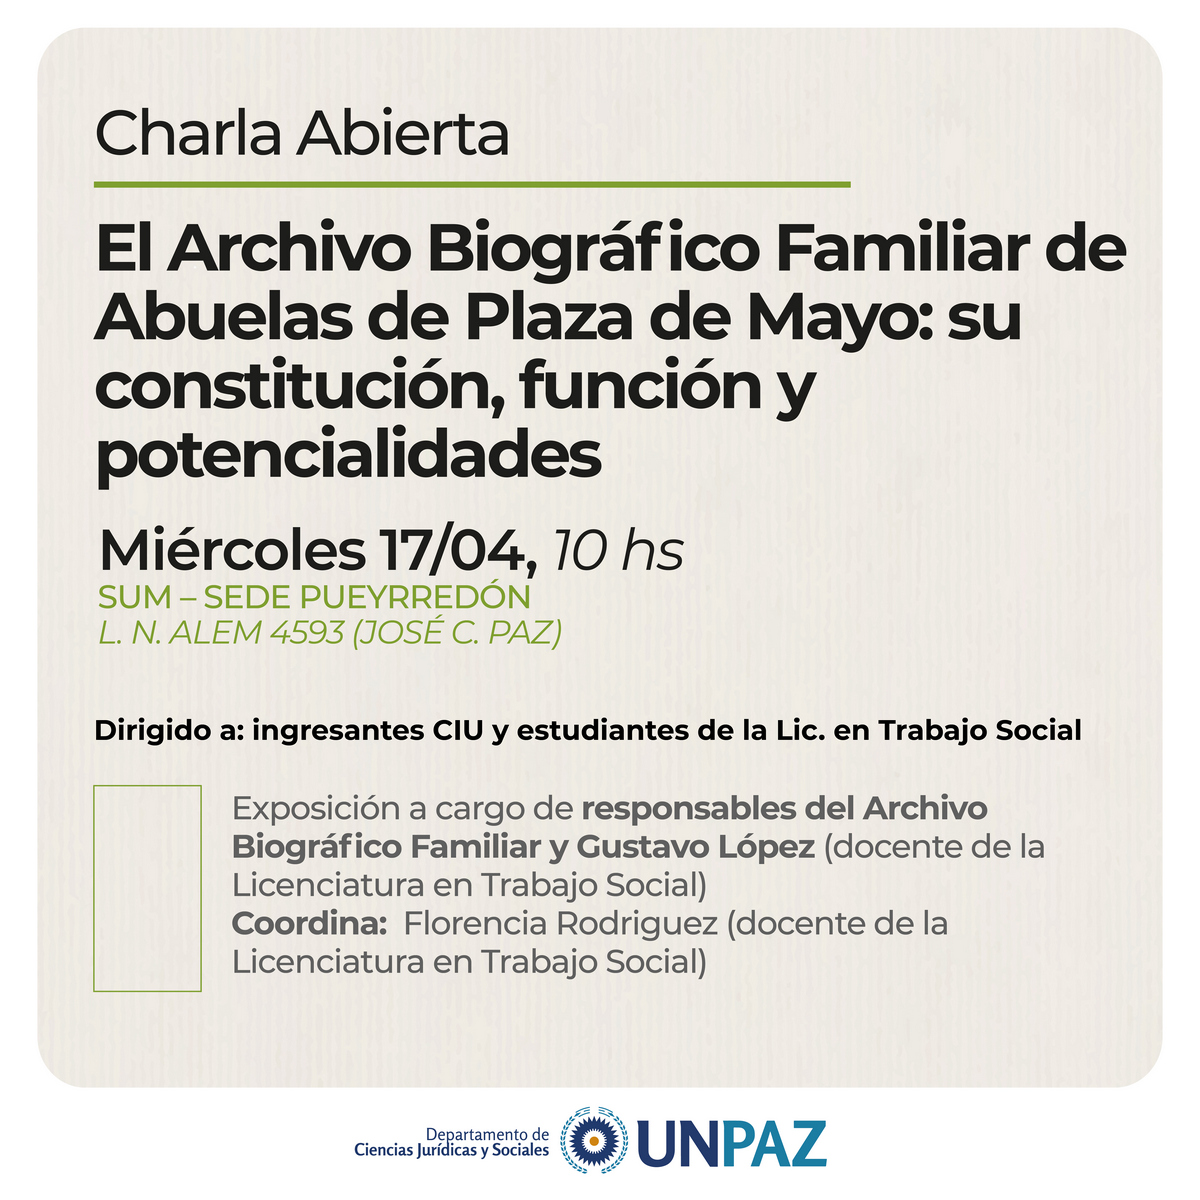  Charla abierta "El Archivo Biográfico Familiar de Abuelas de Plaza de Mayo: su constitución, función y potencialidades"